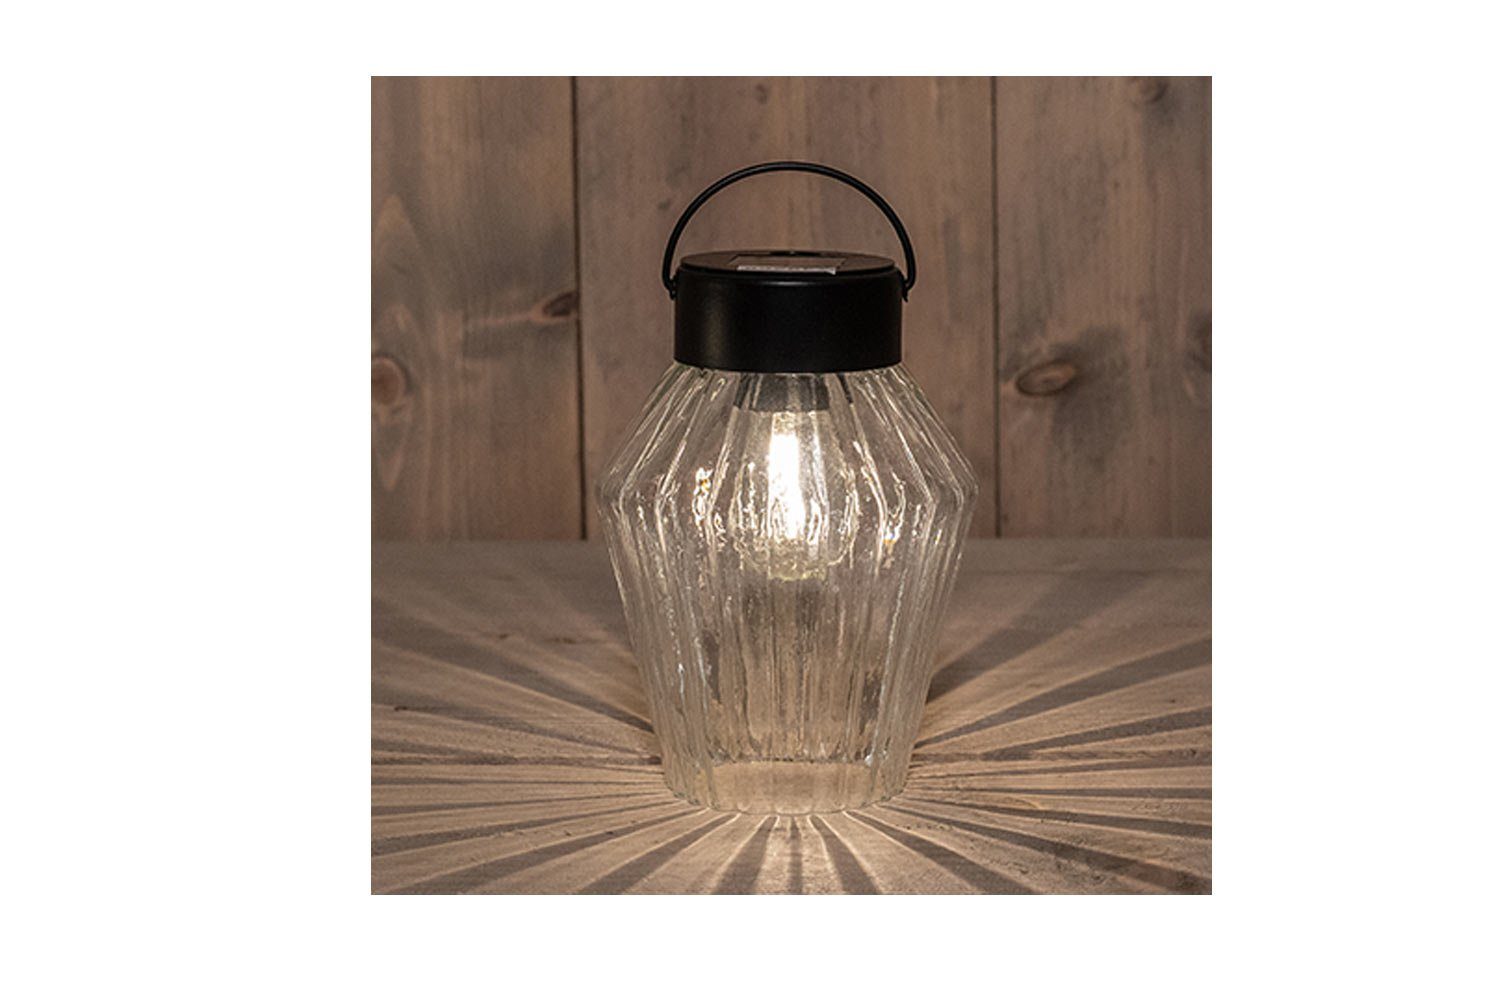 Deko Anna`s LED Glas warmweiss, Collection, Windlicht Tischleuchte Filament Licht klein Solar Bakker Dämmerungssensor, Coen LED,